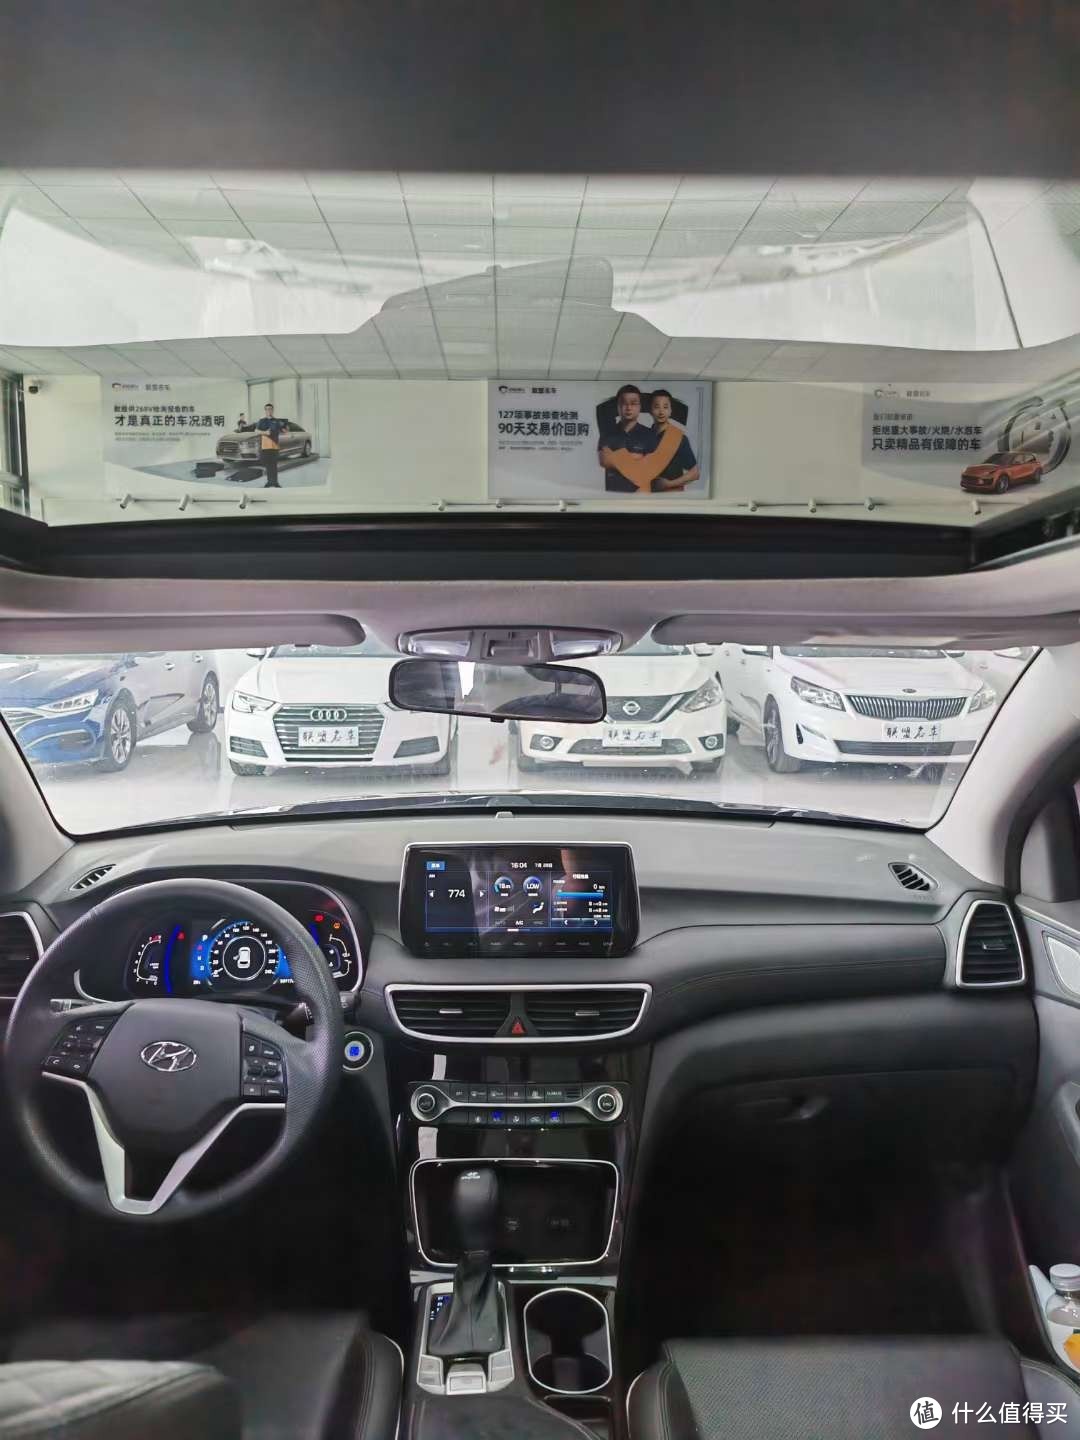 现代途胜是一款SUV，提供了多种动力系统以满足不同消费者的需求